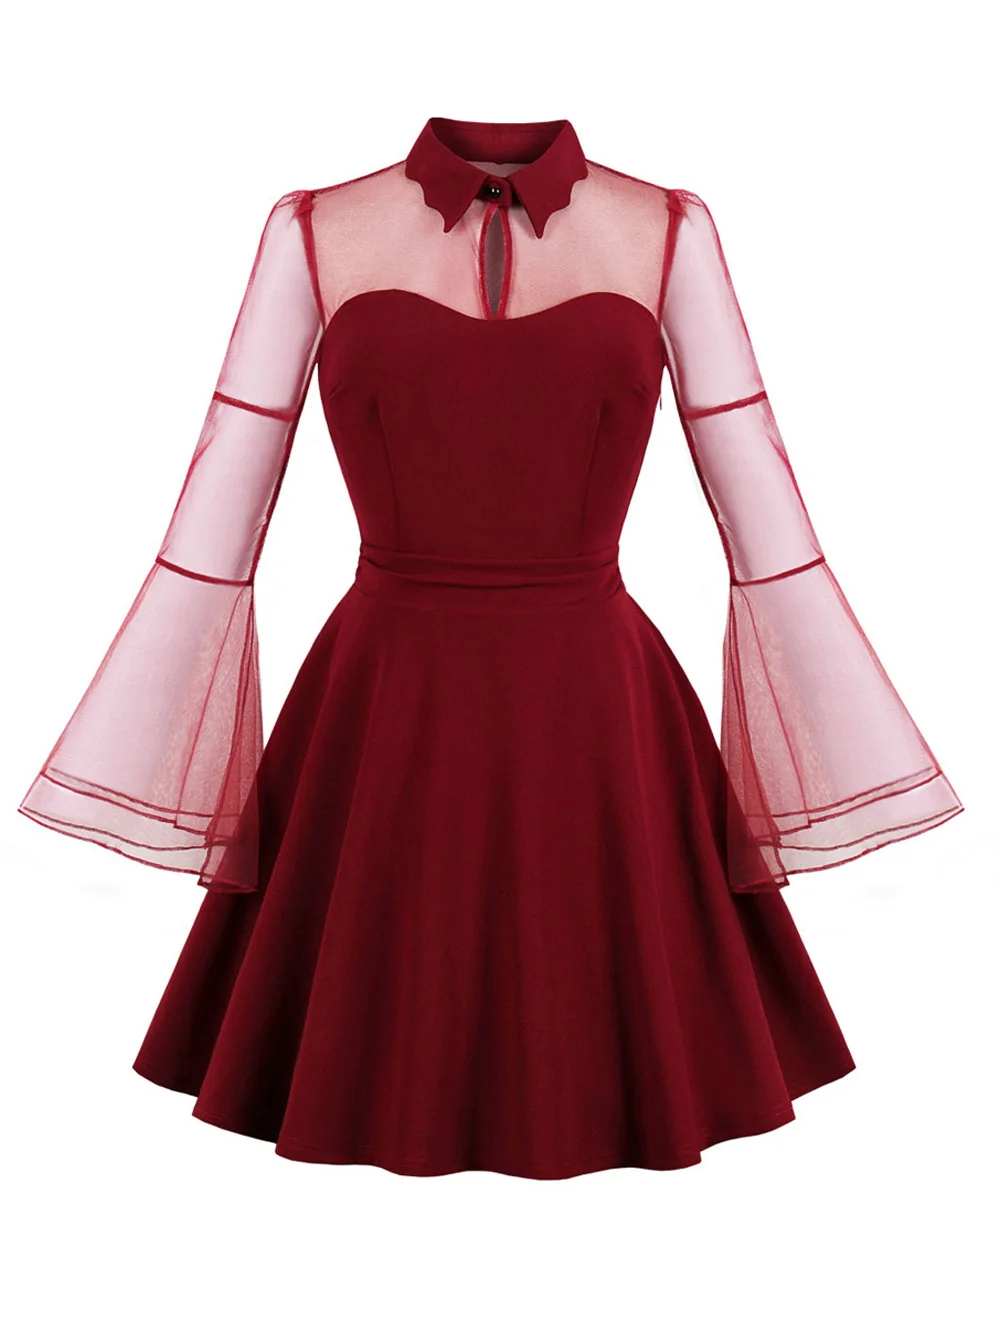 Sovalro женское ретро платье 50s рокабилли халат с лацканами длинные расклешенные рукава прозрачное винтажное платье Летнее ТРАПЕЦИЕВИДНОЕ вечернее платье - Цвет: Red Wine